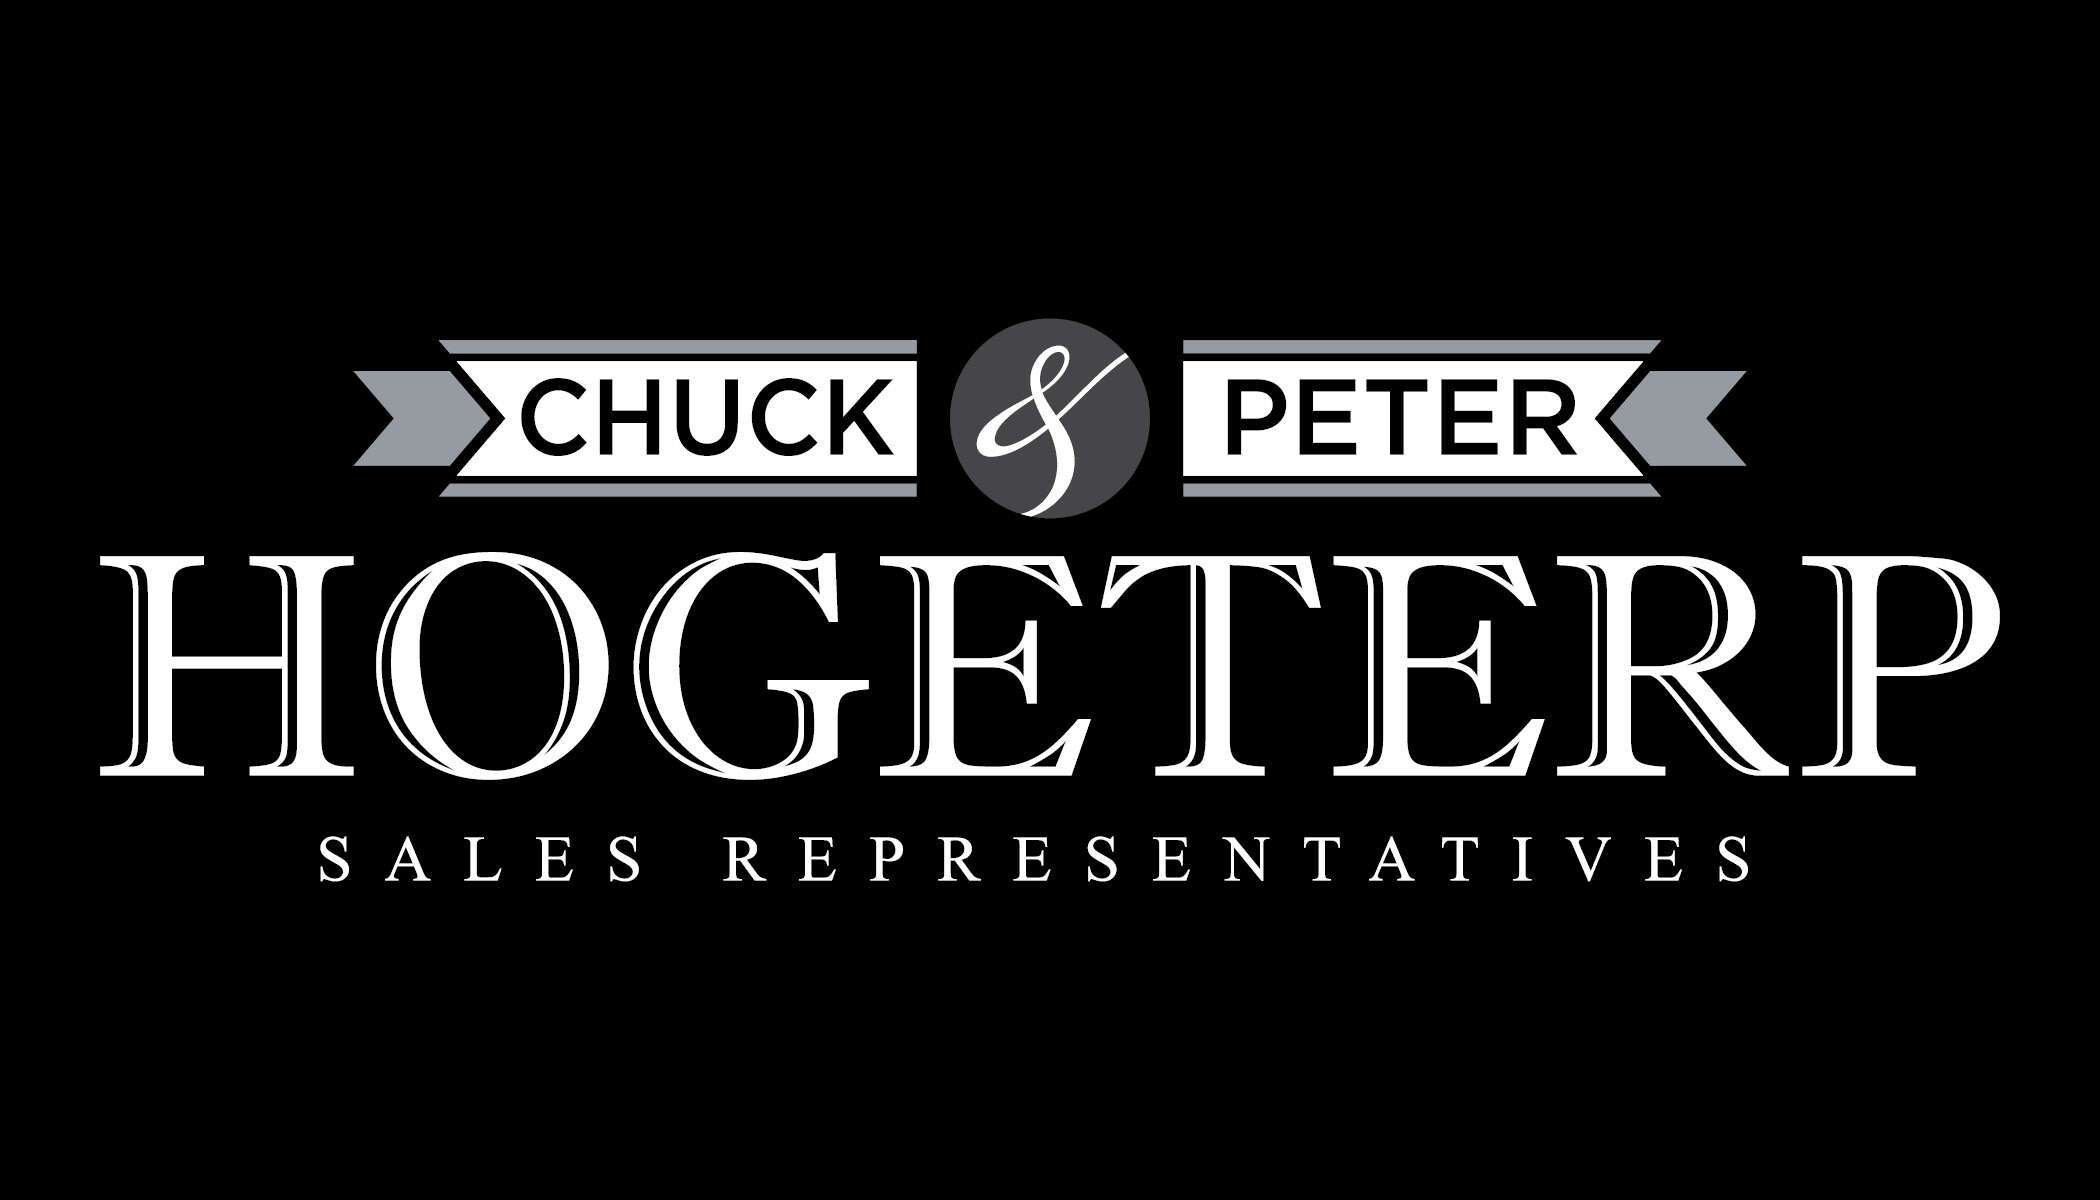 Chuck & Peter Hogeterp Real Estate